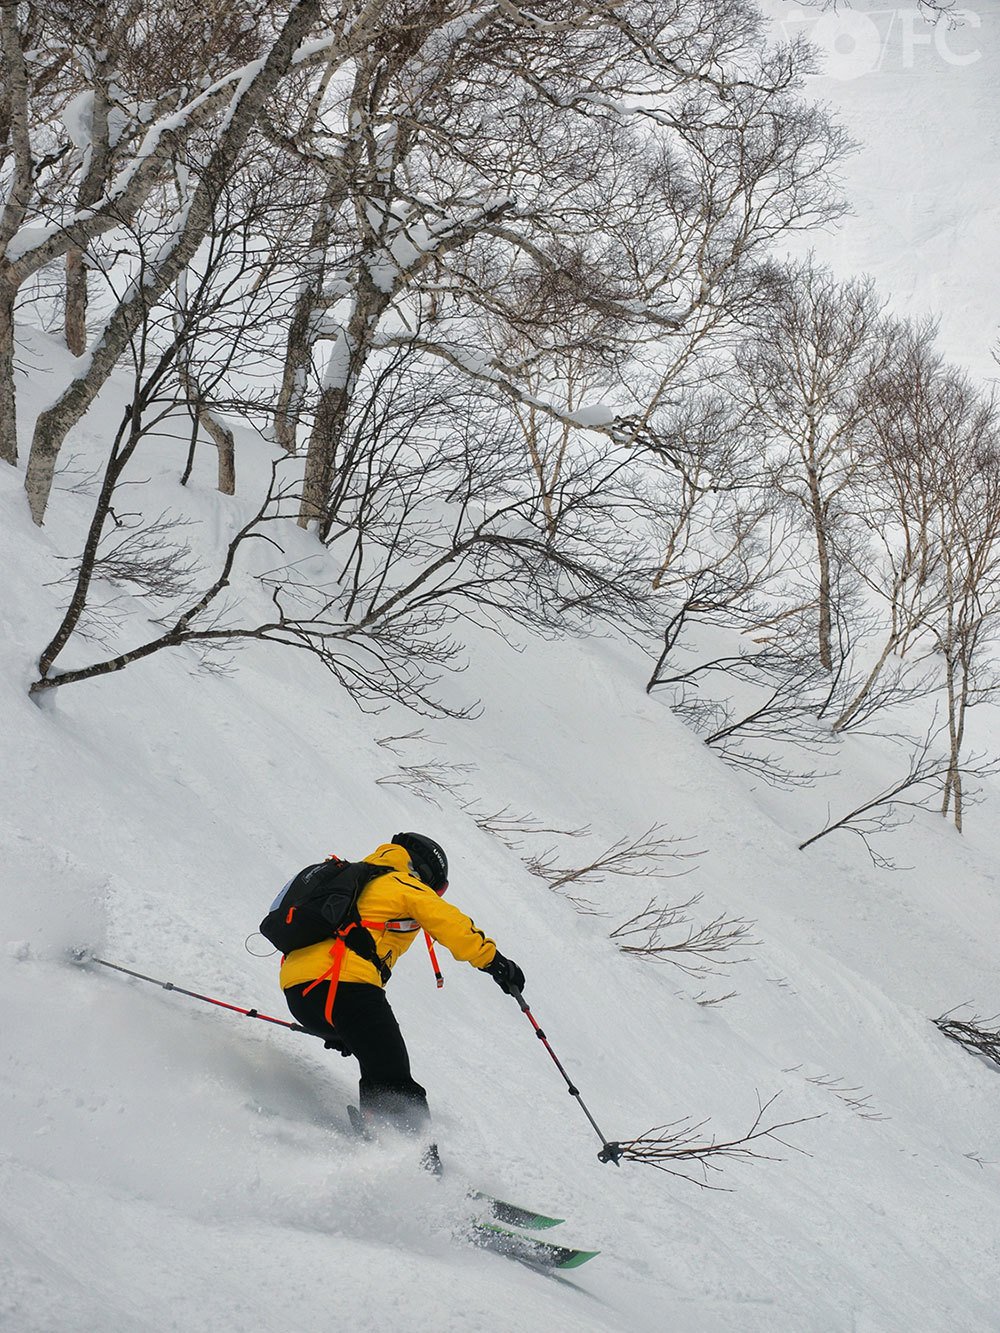 Ski Japón